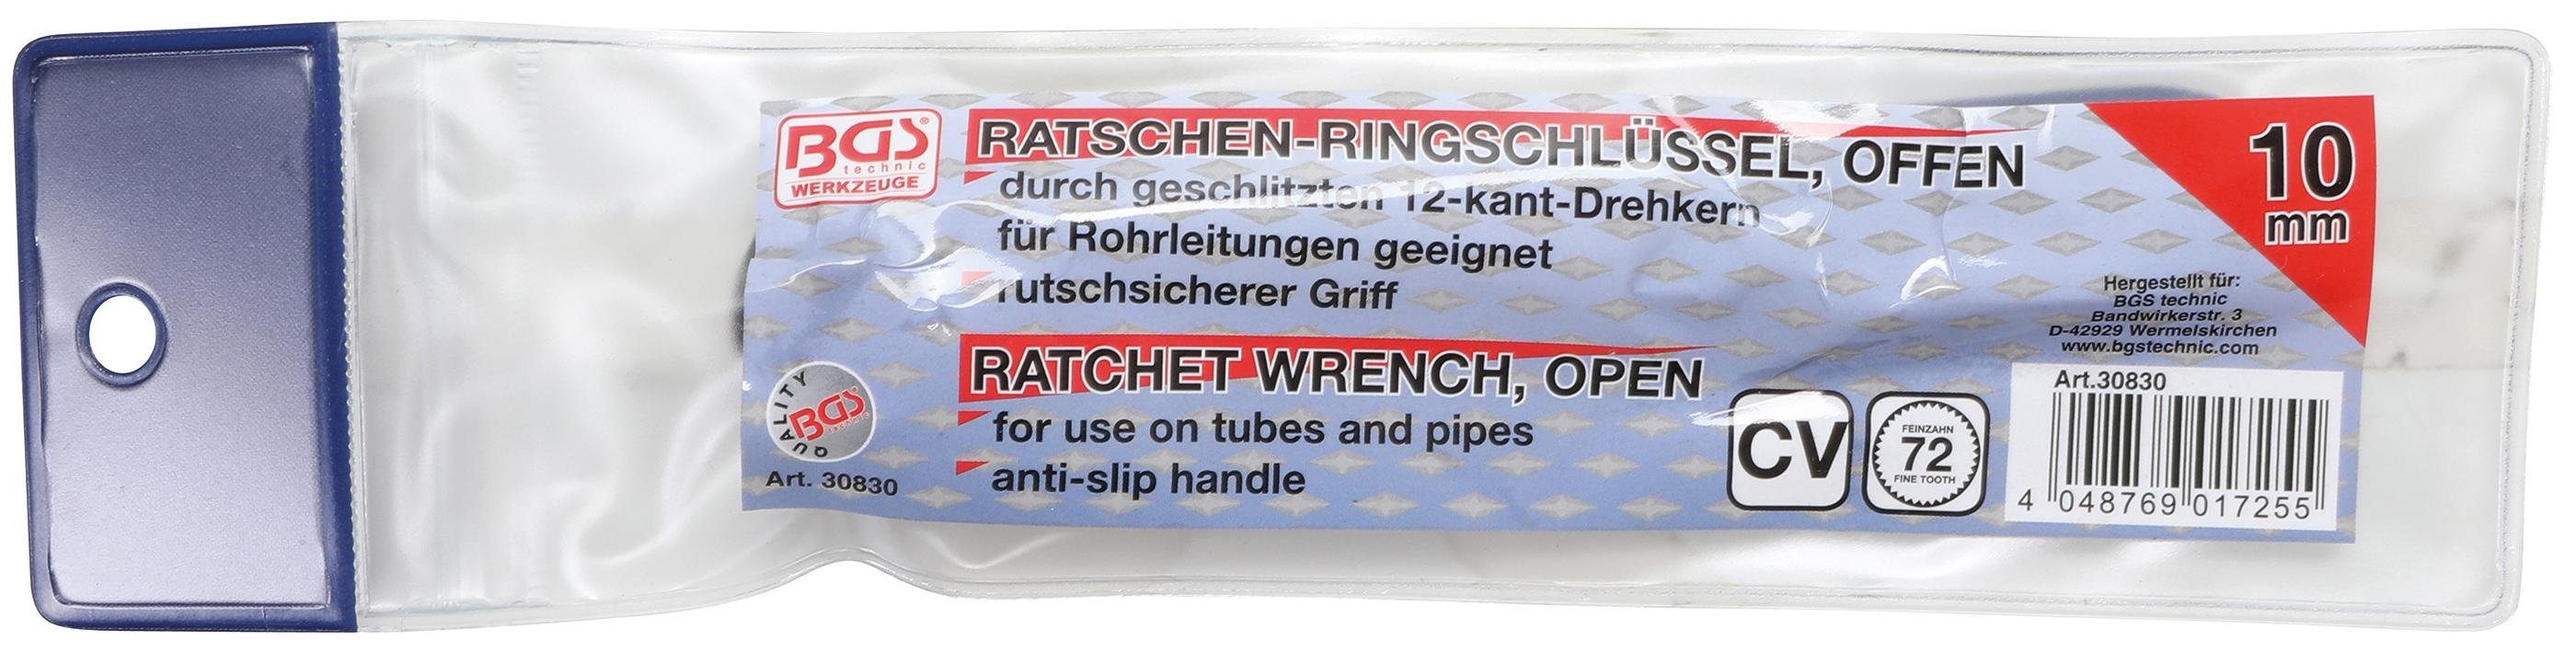 Ratschen-Ringschlüssel, BGS Stecknuss offen, technic SW 10 mm